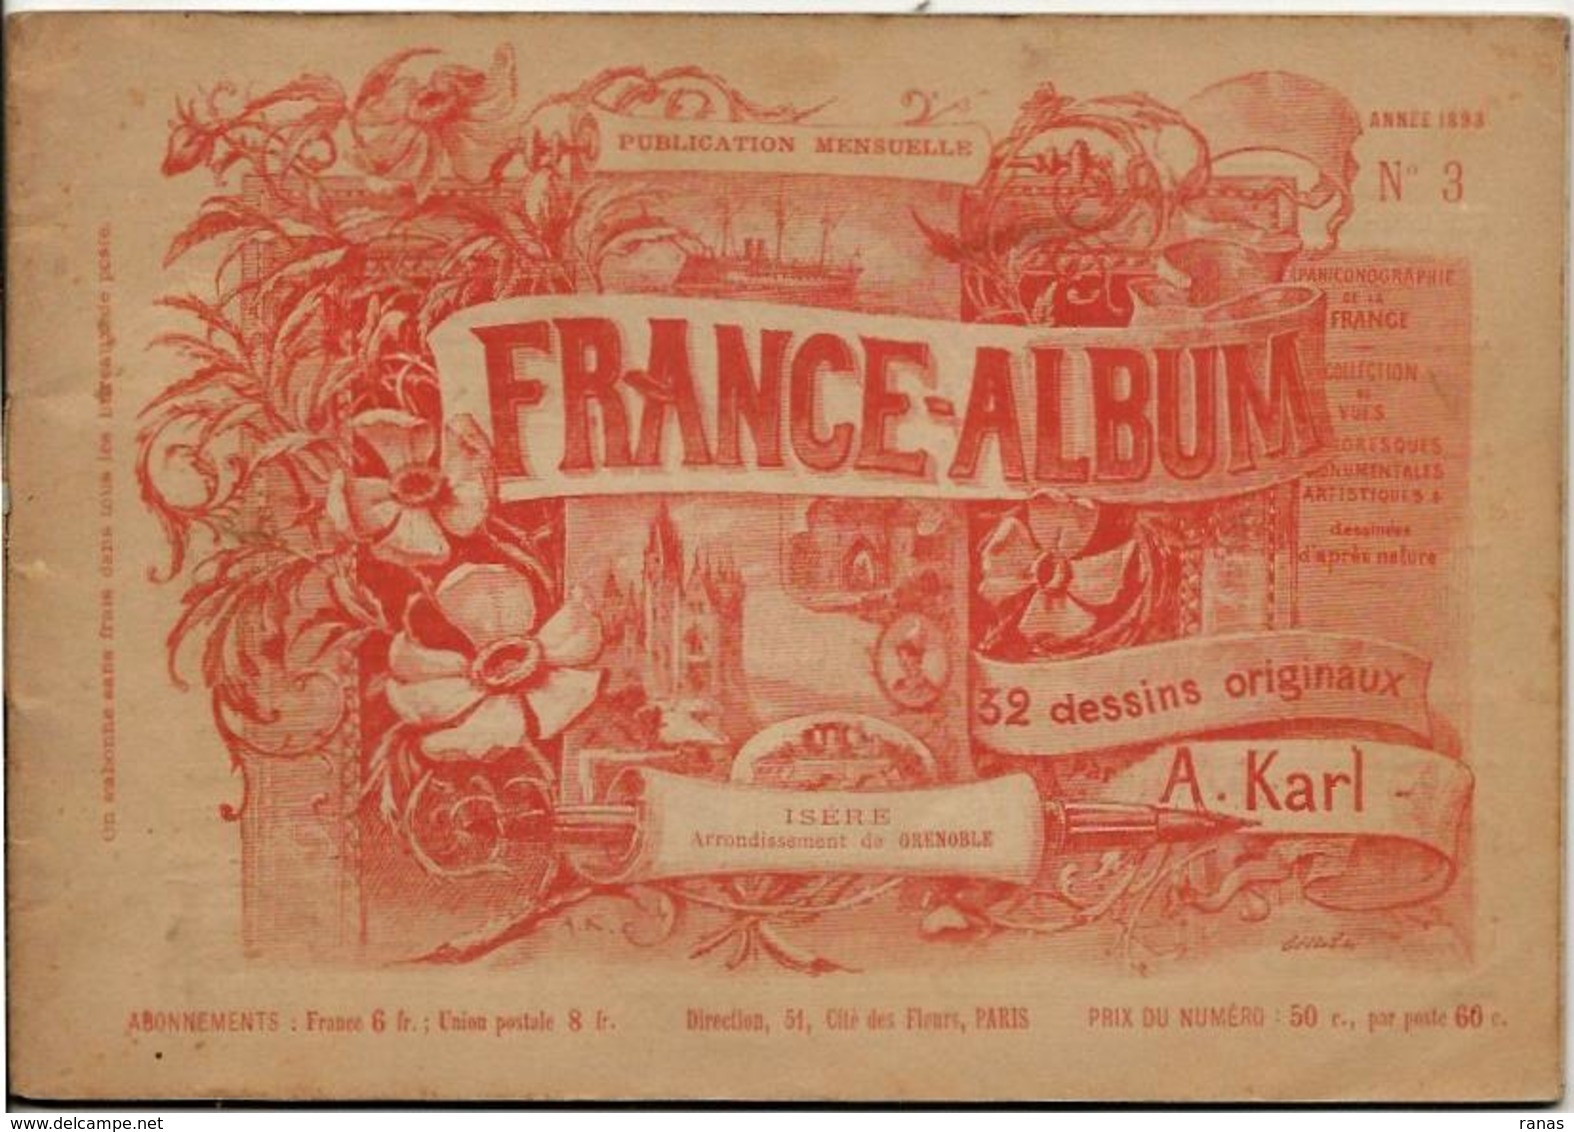 Isère 38 France Album De A. KARL, Carte Gravures Texte Publicités 1893 - Dépliants Touristiques